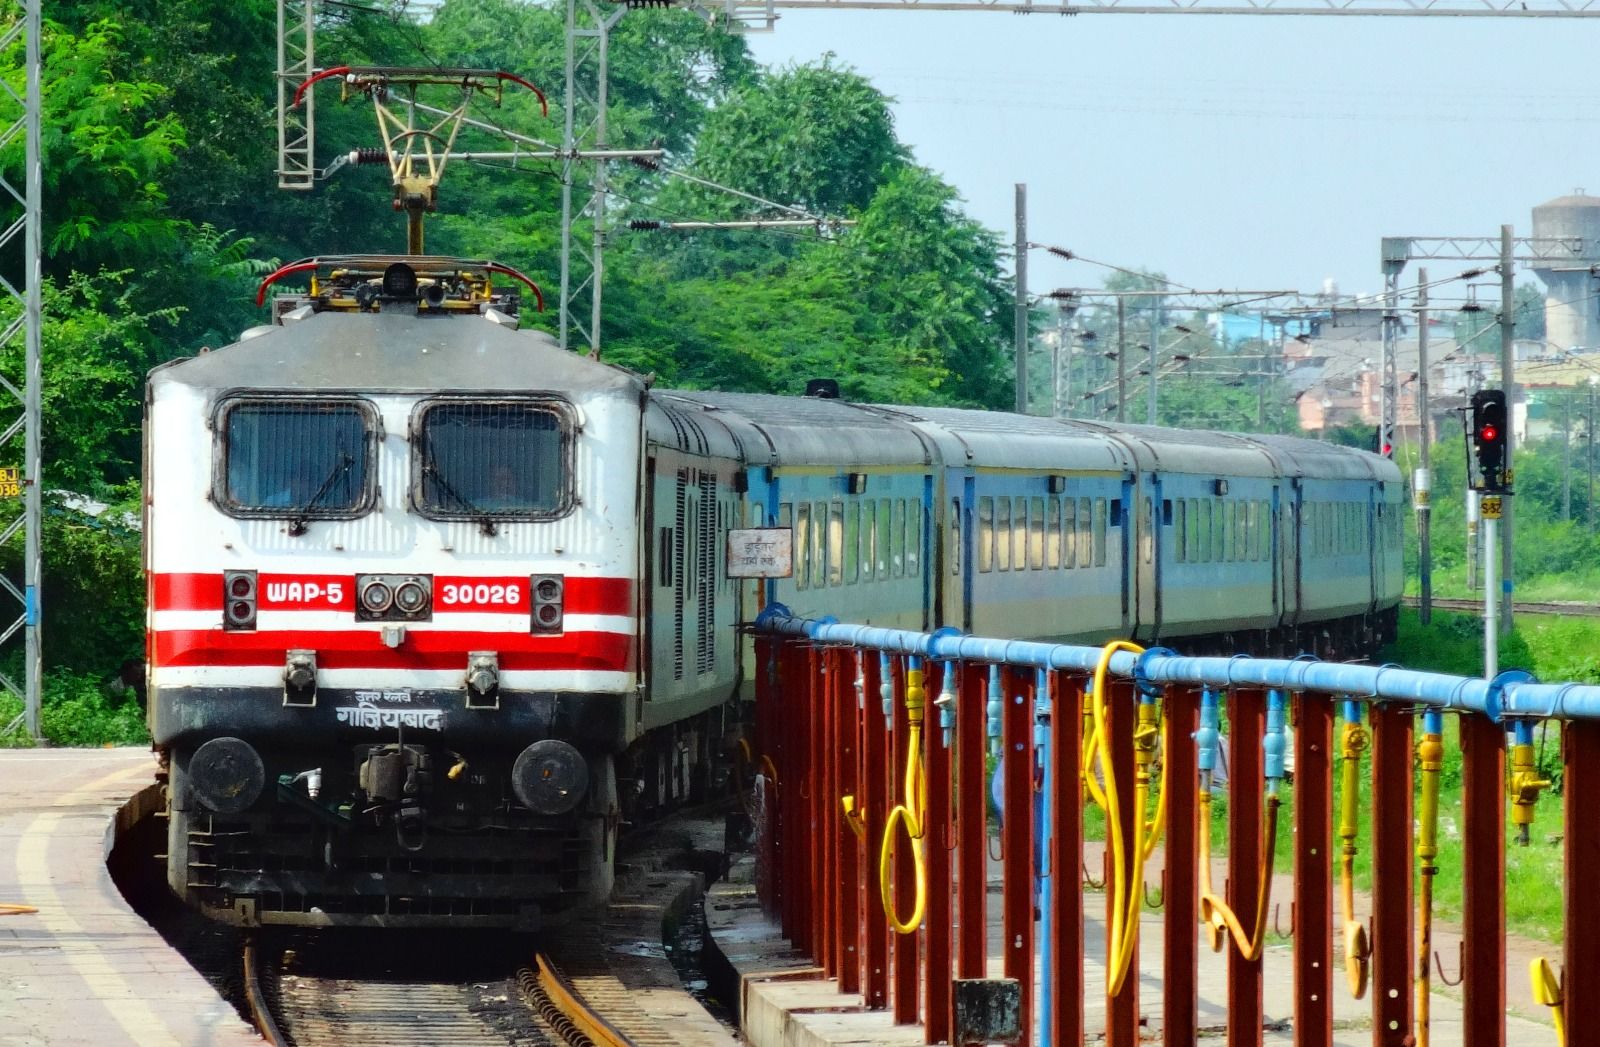 भारतीय रेल की सबसे तेज़ गाड़ियां: भोपाल वंदे भारत और शताब्दी एक्सप्रेस की रफ्तार घटी, इतने समय में पहुँचेंगी 130 किमी/घंटा पर दौड़ते हुए